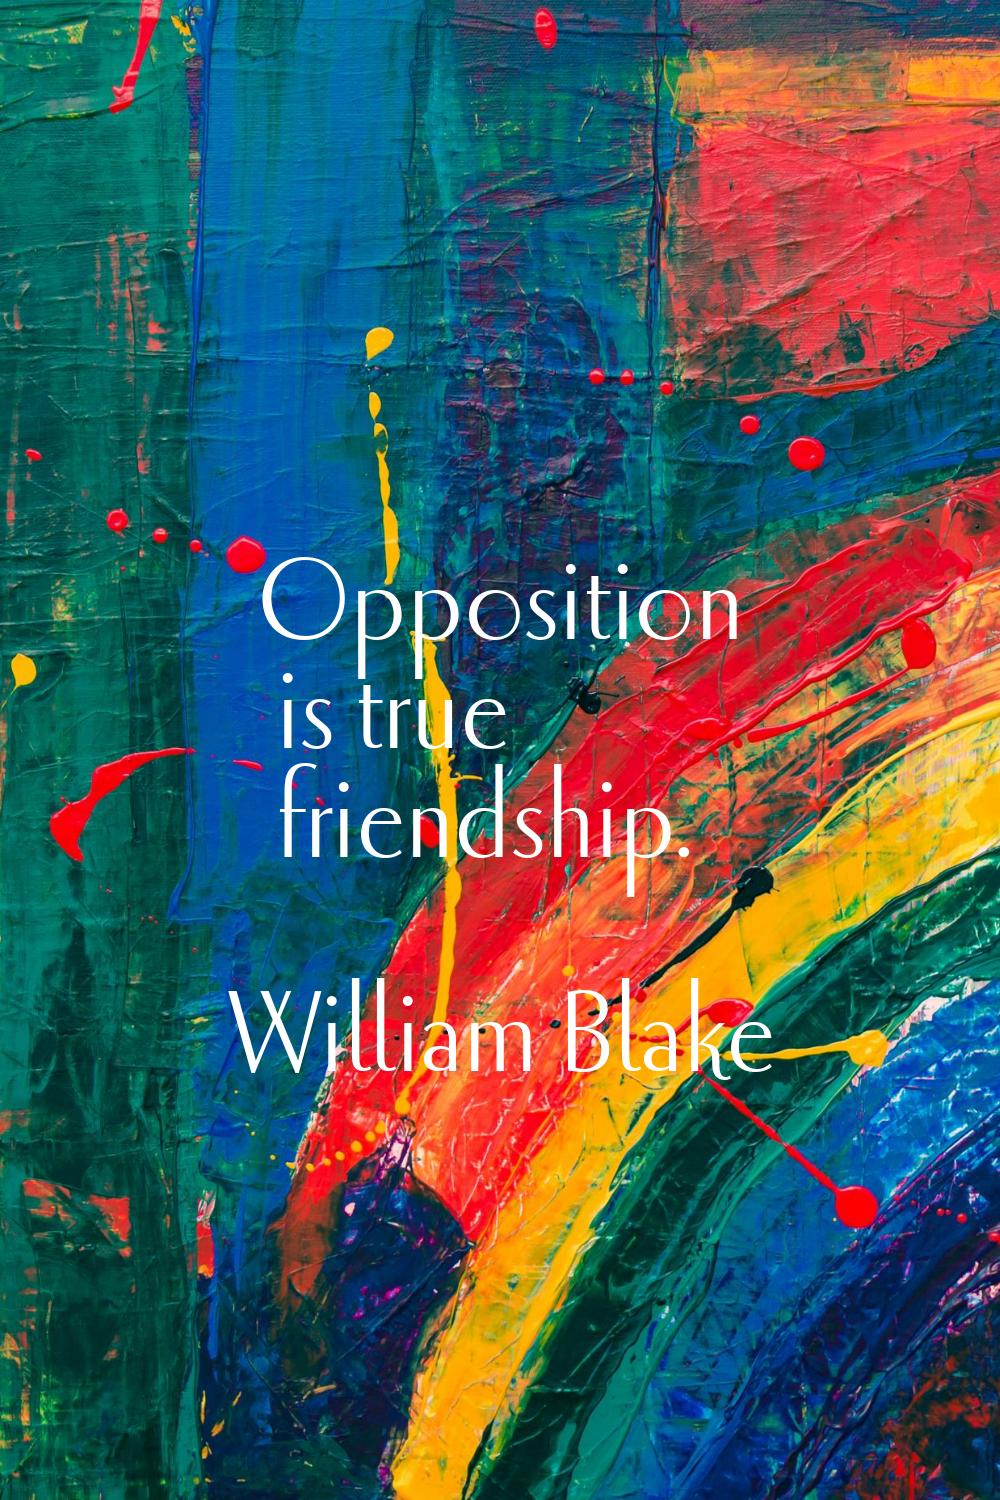 Opposition is true friendship.